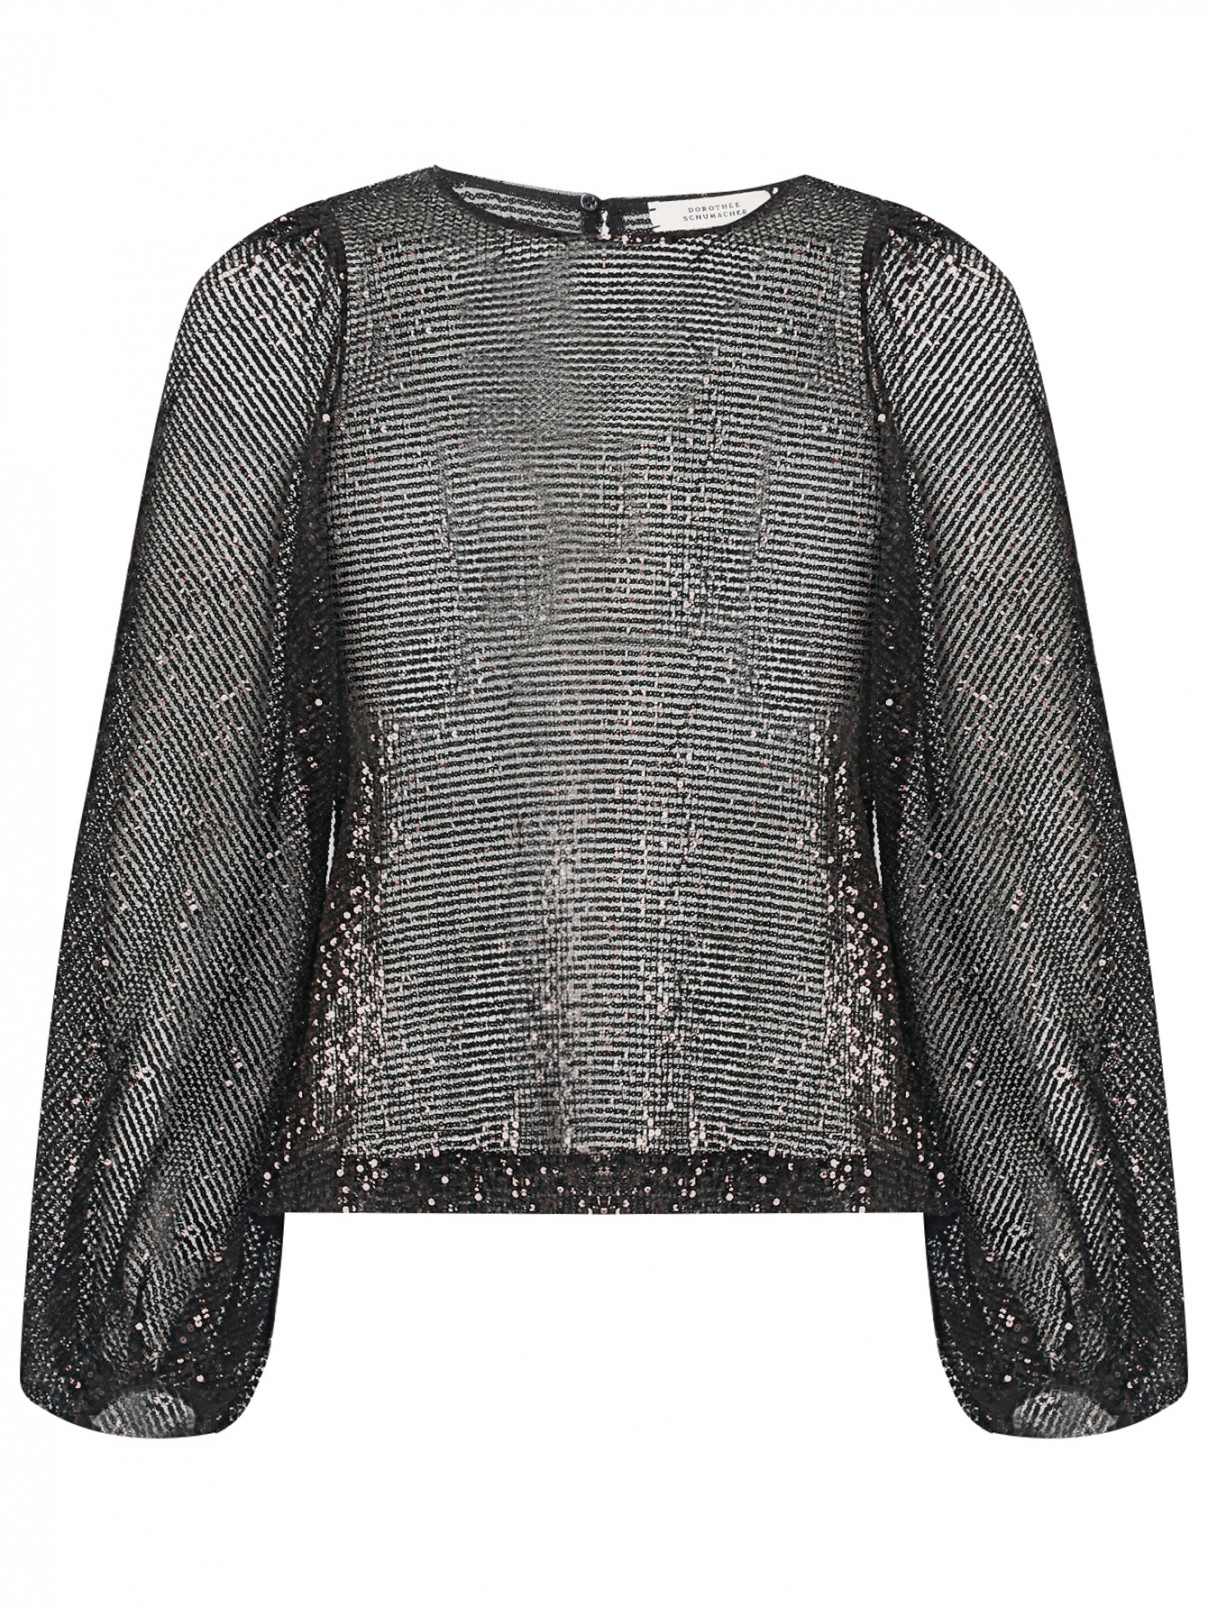 Блуза свободного кроя декорированная пайетками Dorothee Schumacher  –  Общий вид  – Цвет:  Черный